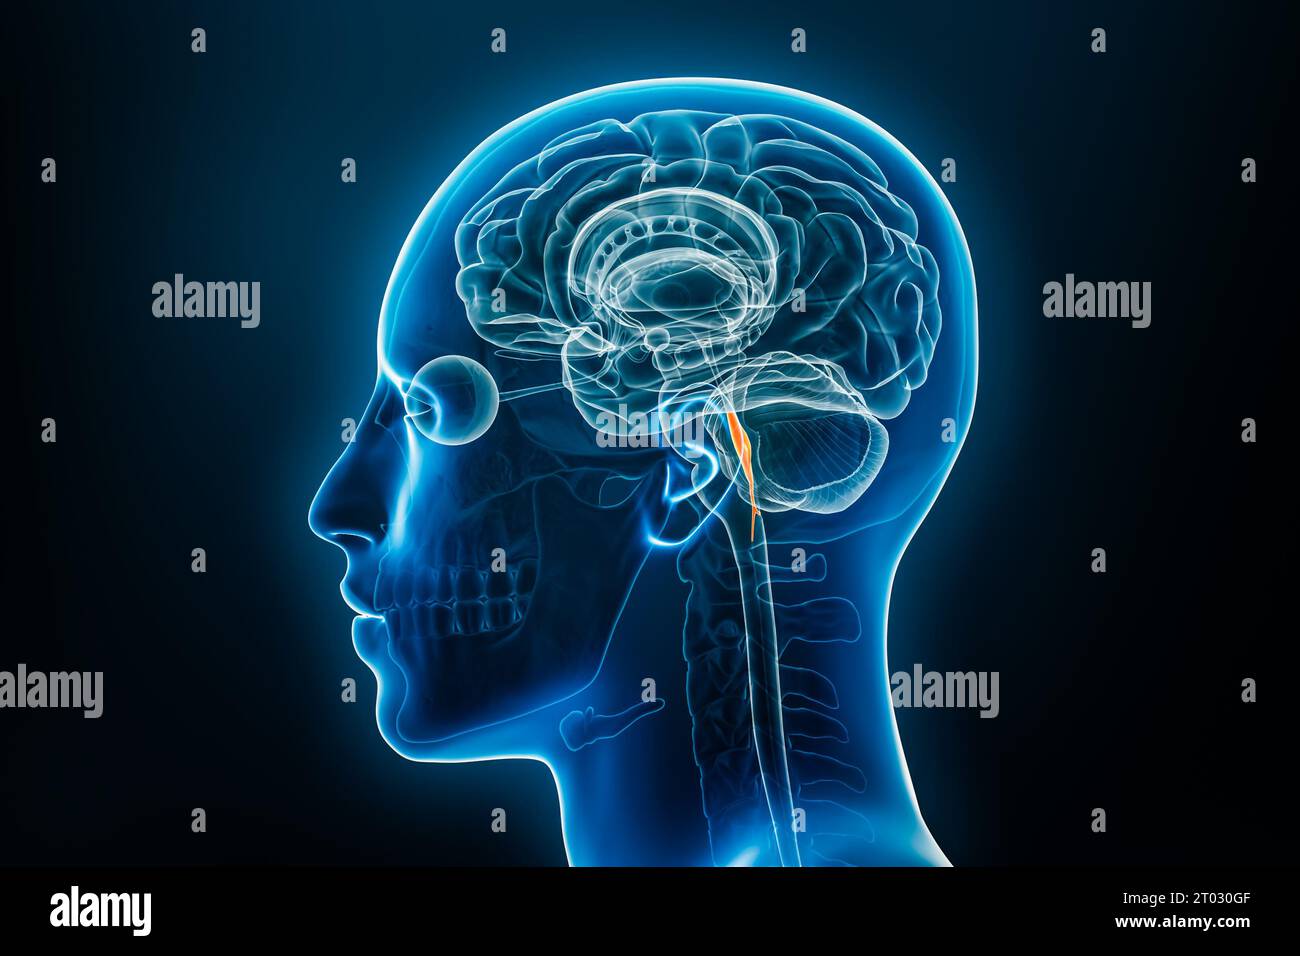 Röntgenprofilansicht der 3D-Darstellung des vierten Ventrikels des Gehirns. Anatomie des menschlichen Körpers und des Nervensystems, Medizin, Biologie, Wissenschaft, Neuroscie Stockfoto